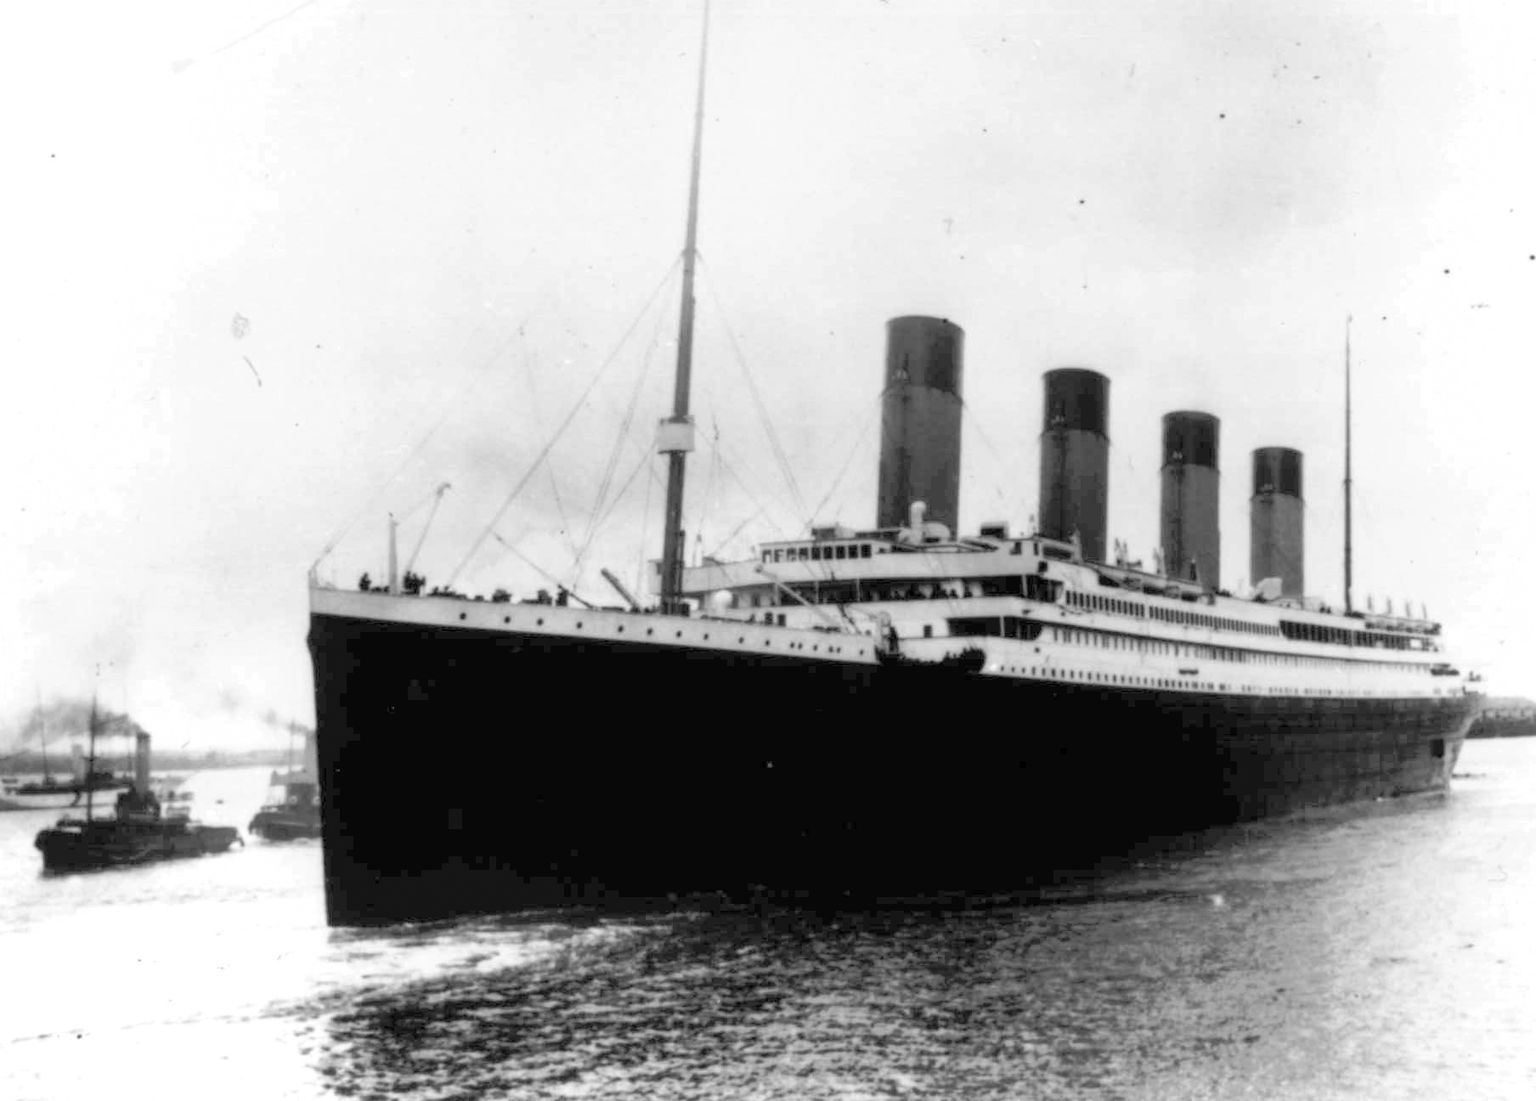 Titanic lahkumas 10. aprillil 1912 Suurbritanniast Southamptonist esmareisile. Titanic põrkas 14. aprillil 1912 jäämäega kokku ja uppus 15. aprillil 1912